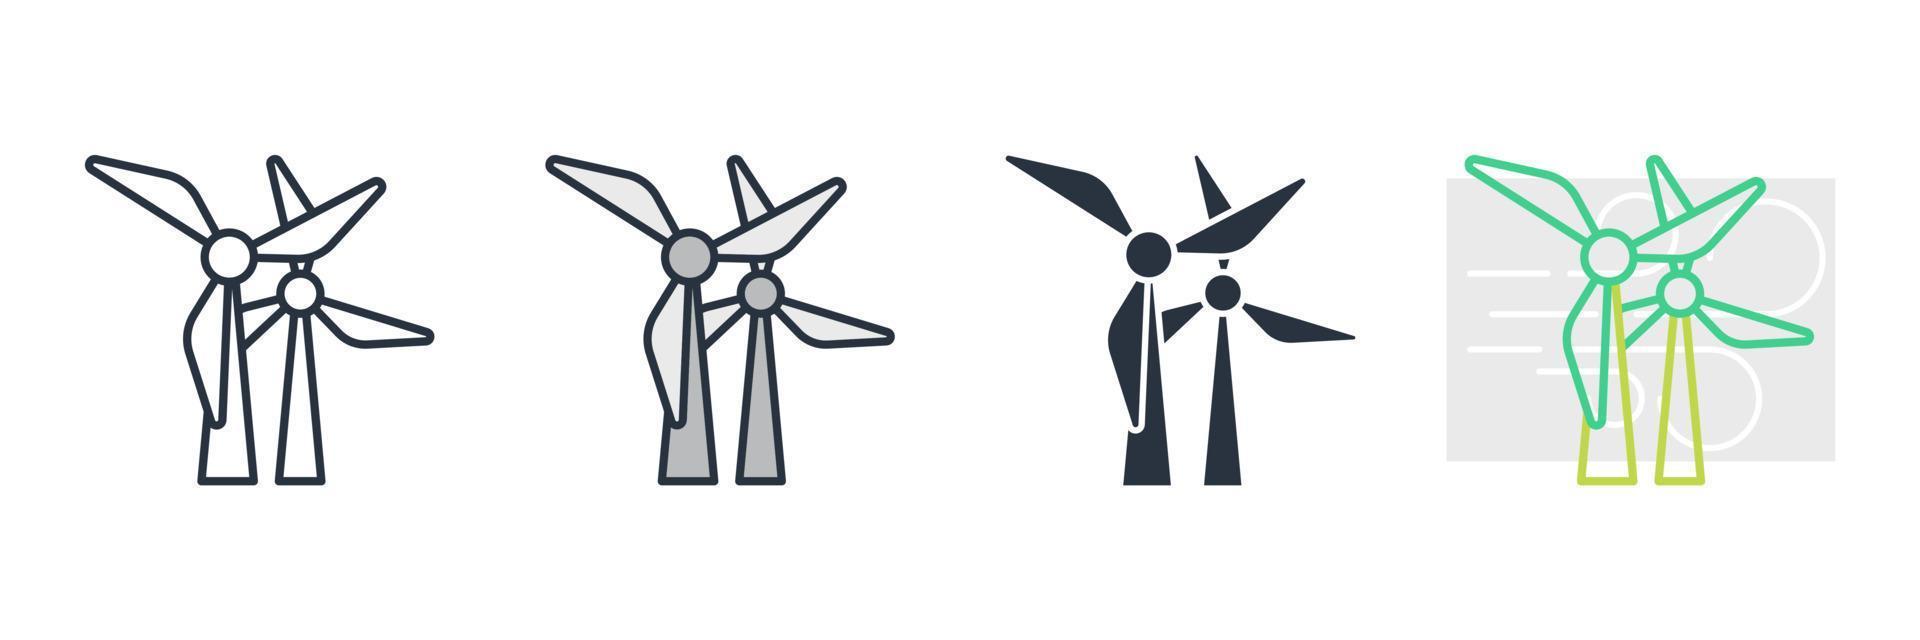 Ilustración de vector de logotipo de icono de turbina de viento. plantilla de símbolo de energía eólica para la colección de diseño gráfico y web